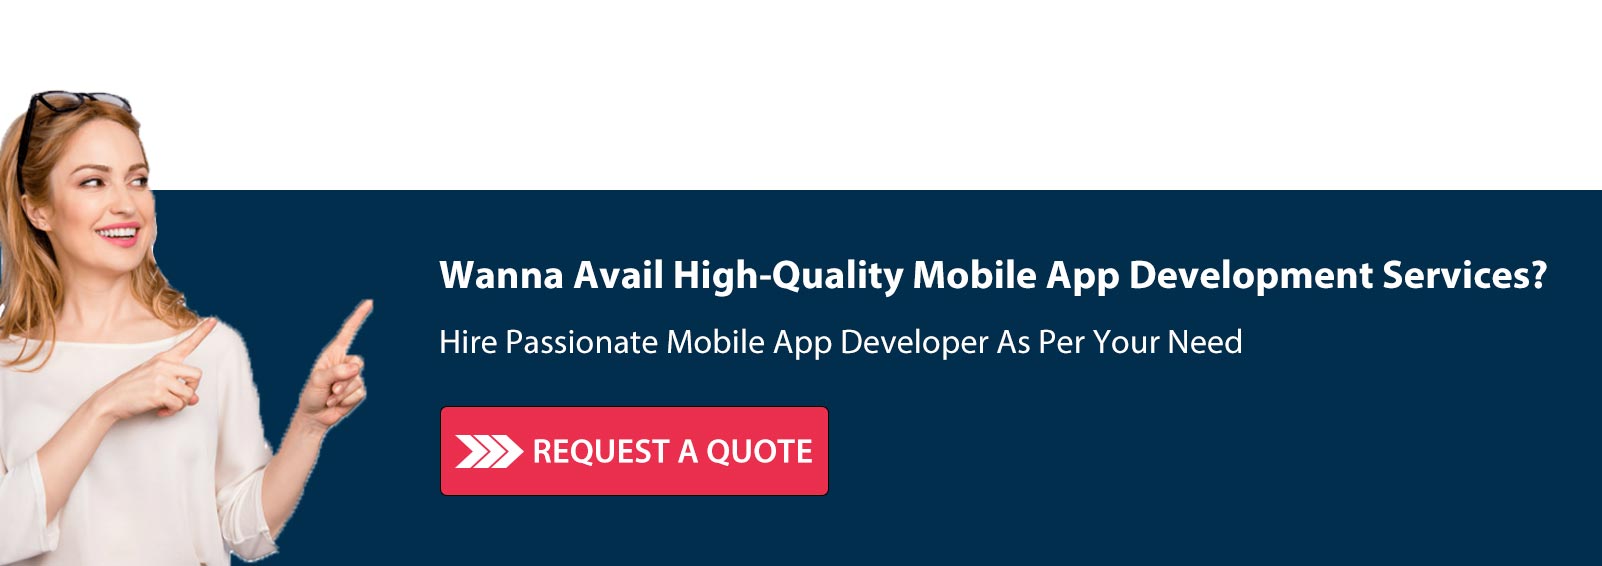 Mobile App Development Services CTA3